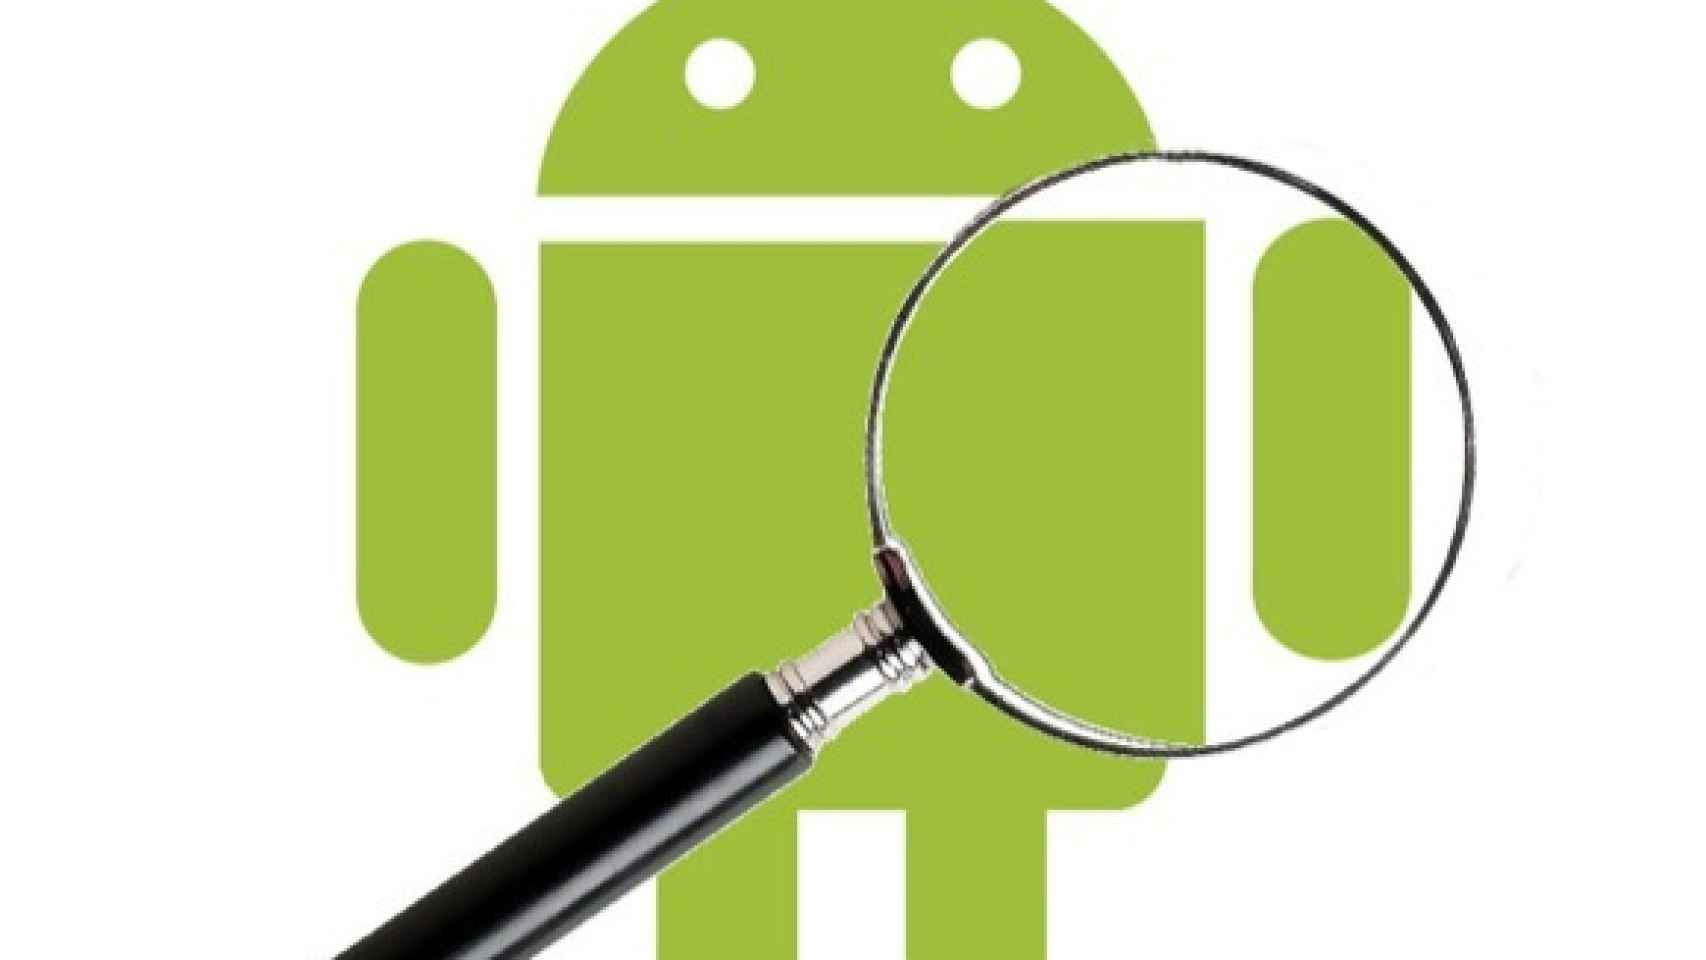 Privacidad en Android: ¿Nos siguen y registran o es alarmismo?